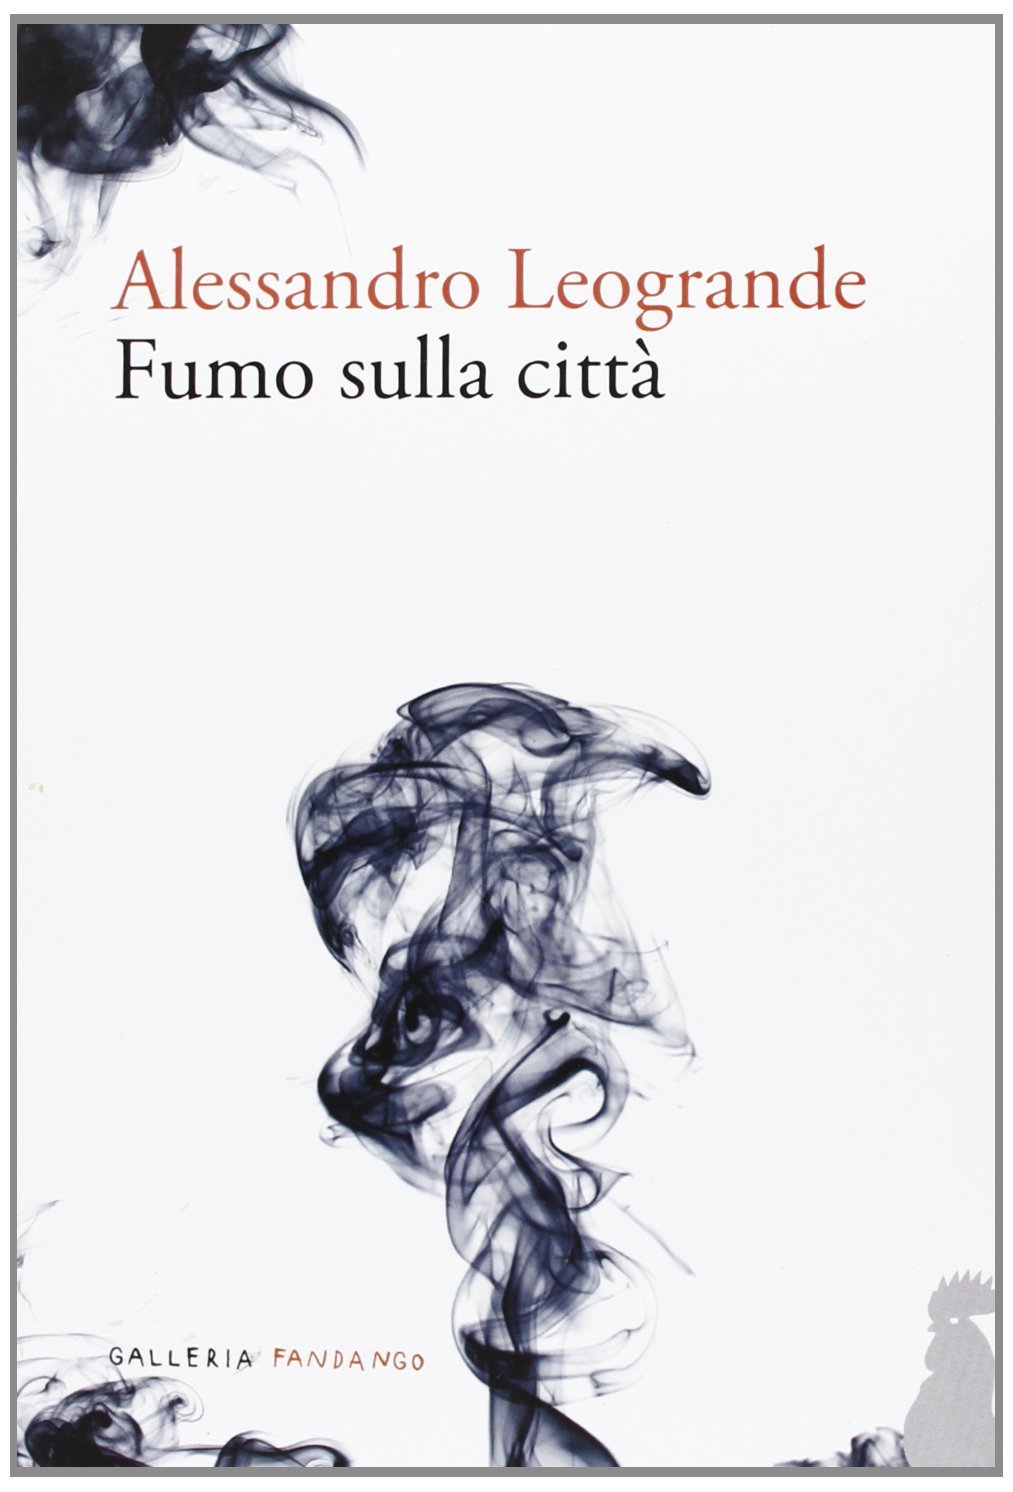 Alessandro Leogrande, Fumo sulla città (2013)